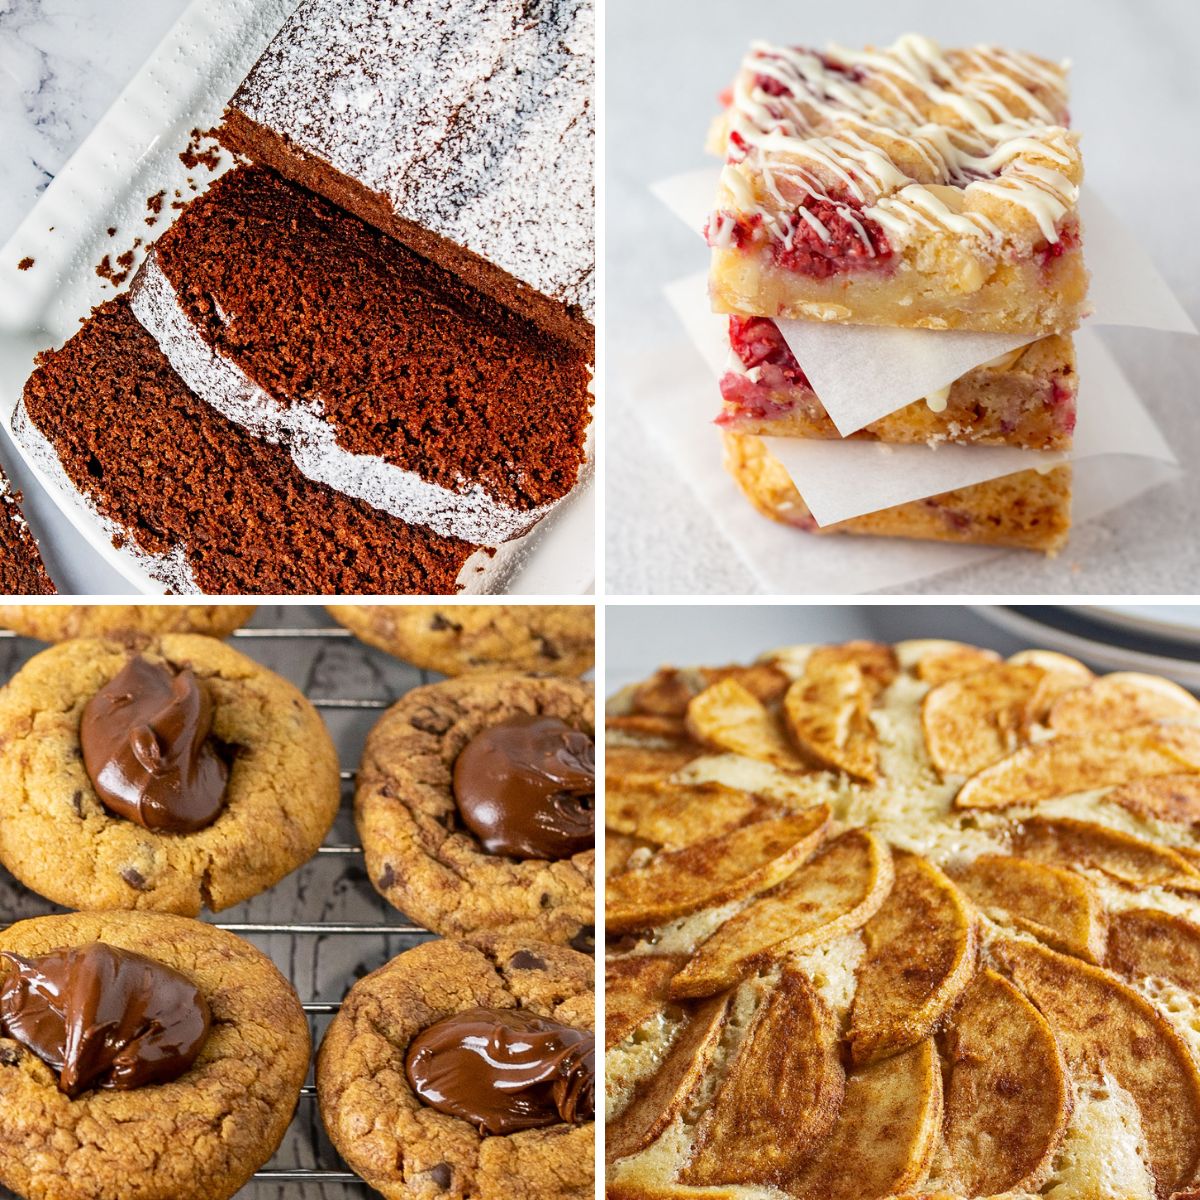 Imagem de divisão quadrada mostrando diferentes ideias para a sobremesa do Dia dos Pais.